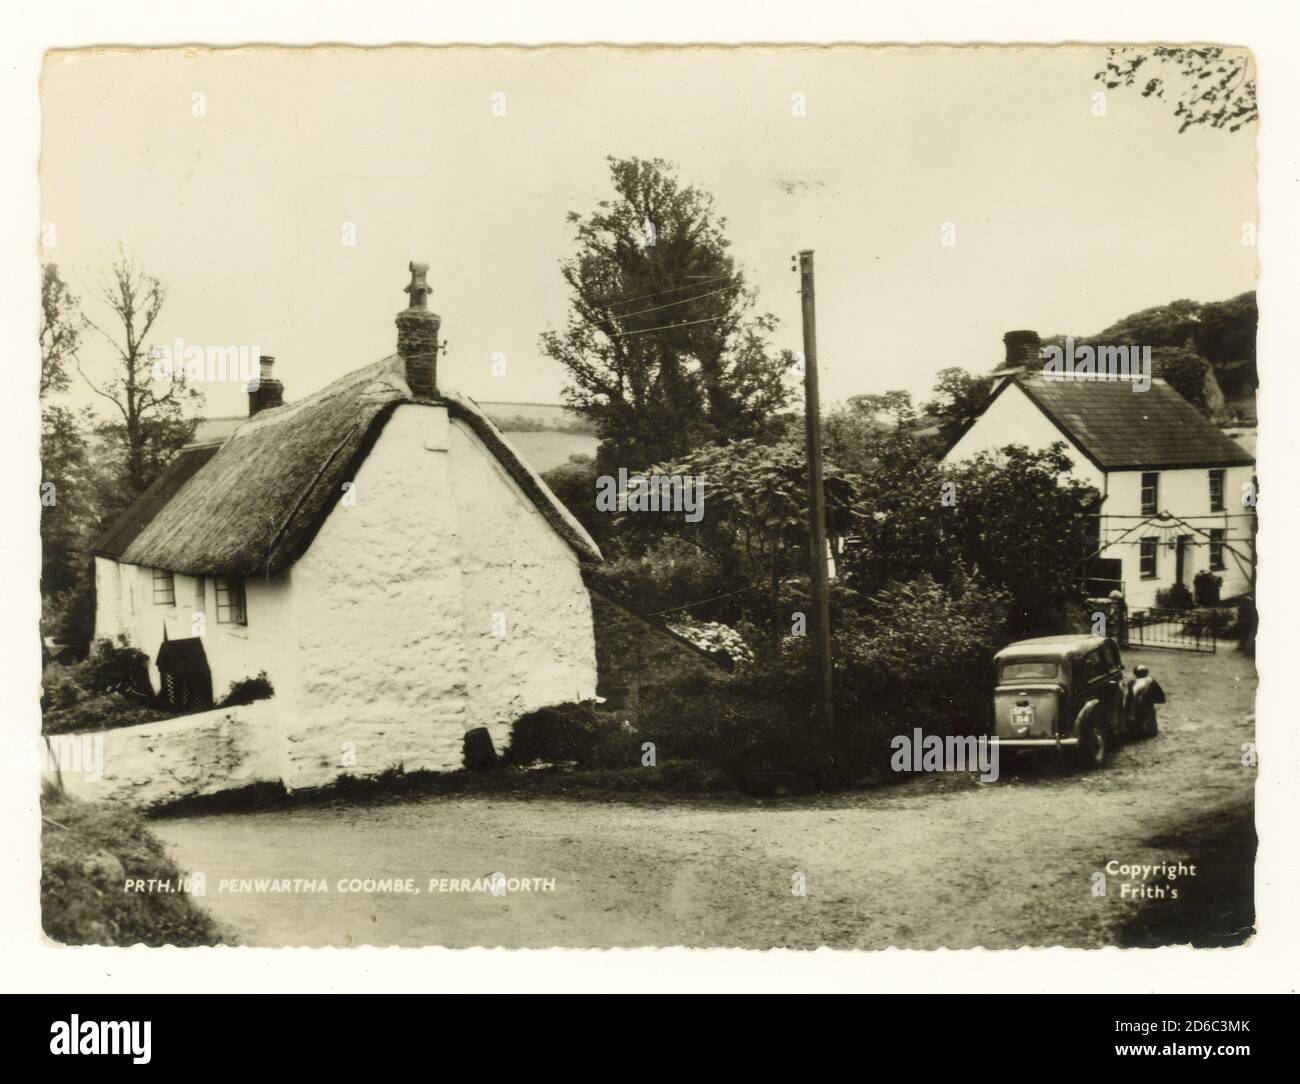 Immagine del 1960 di Penwartha Coombe , con cottage con tetto in paglia e cottage costruiti, architettura vernacolare, pubblicato nell'agosto 1970, Regno Unito Foto Stock